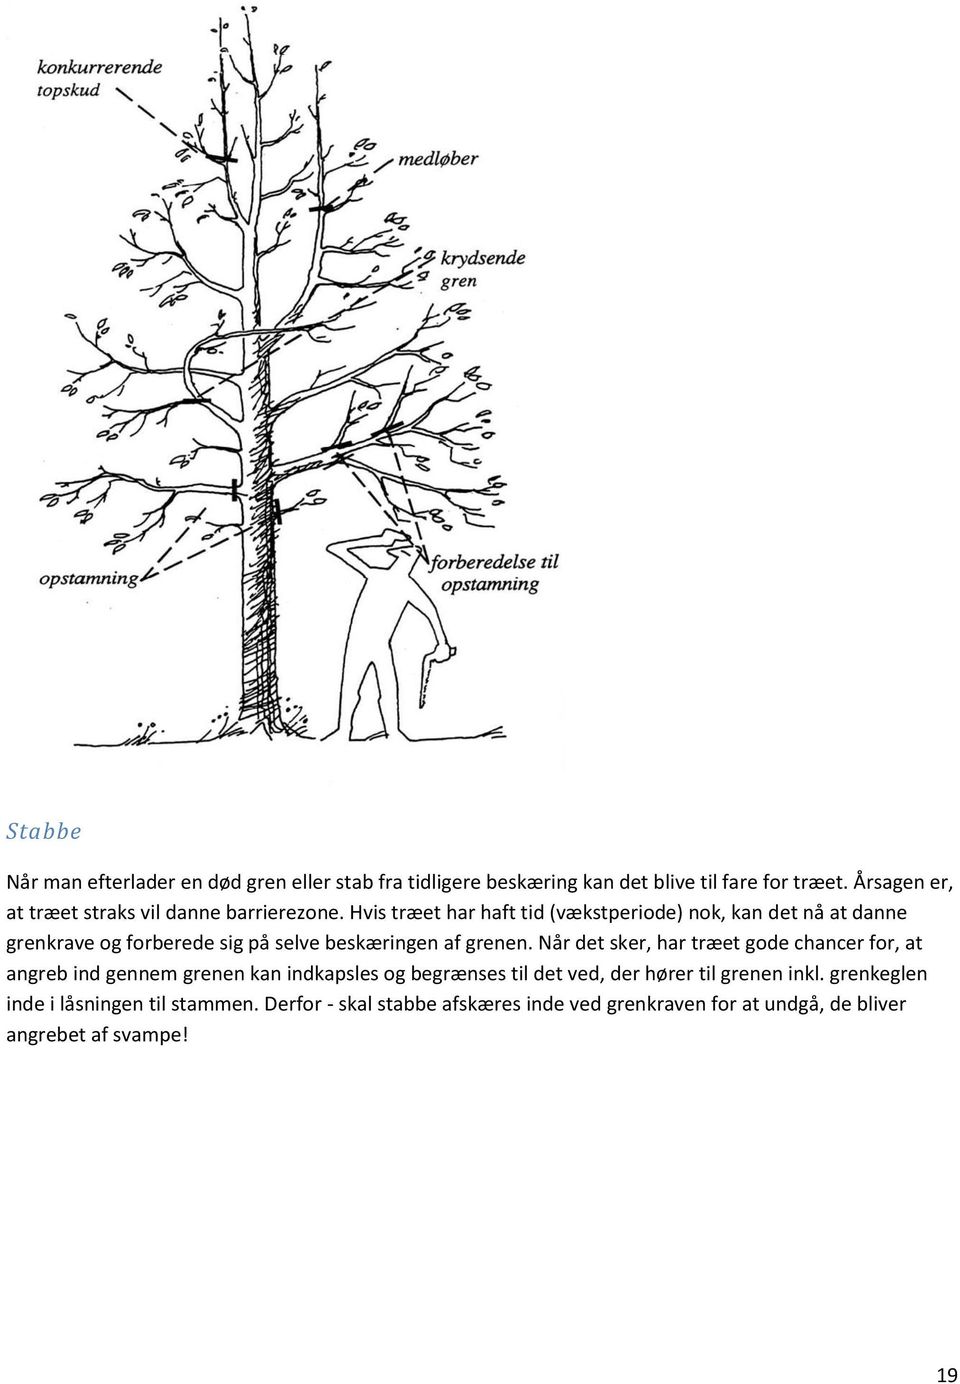 Hvis træet har haft tid (vækstperiode) nok, kan det nå at danne grenkrave og forberede sig på selve beskæringen af grenen.